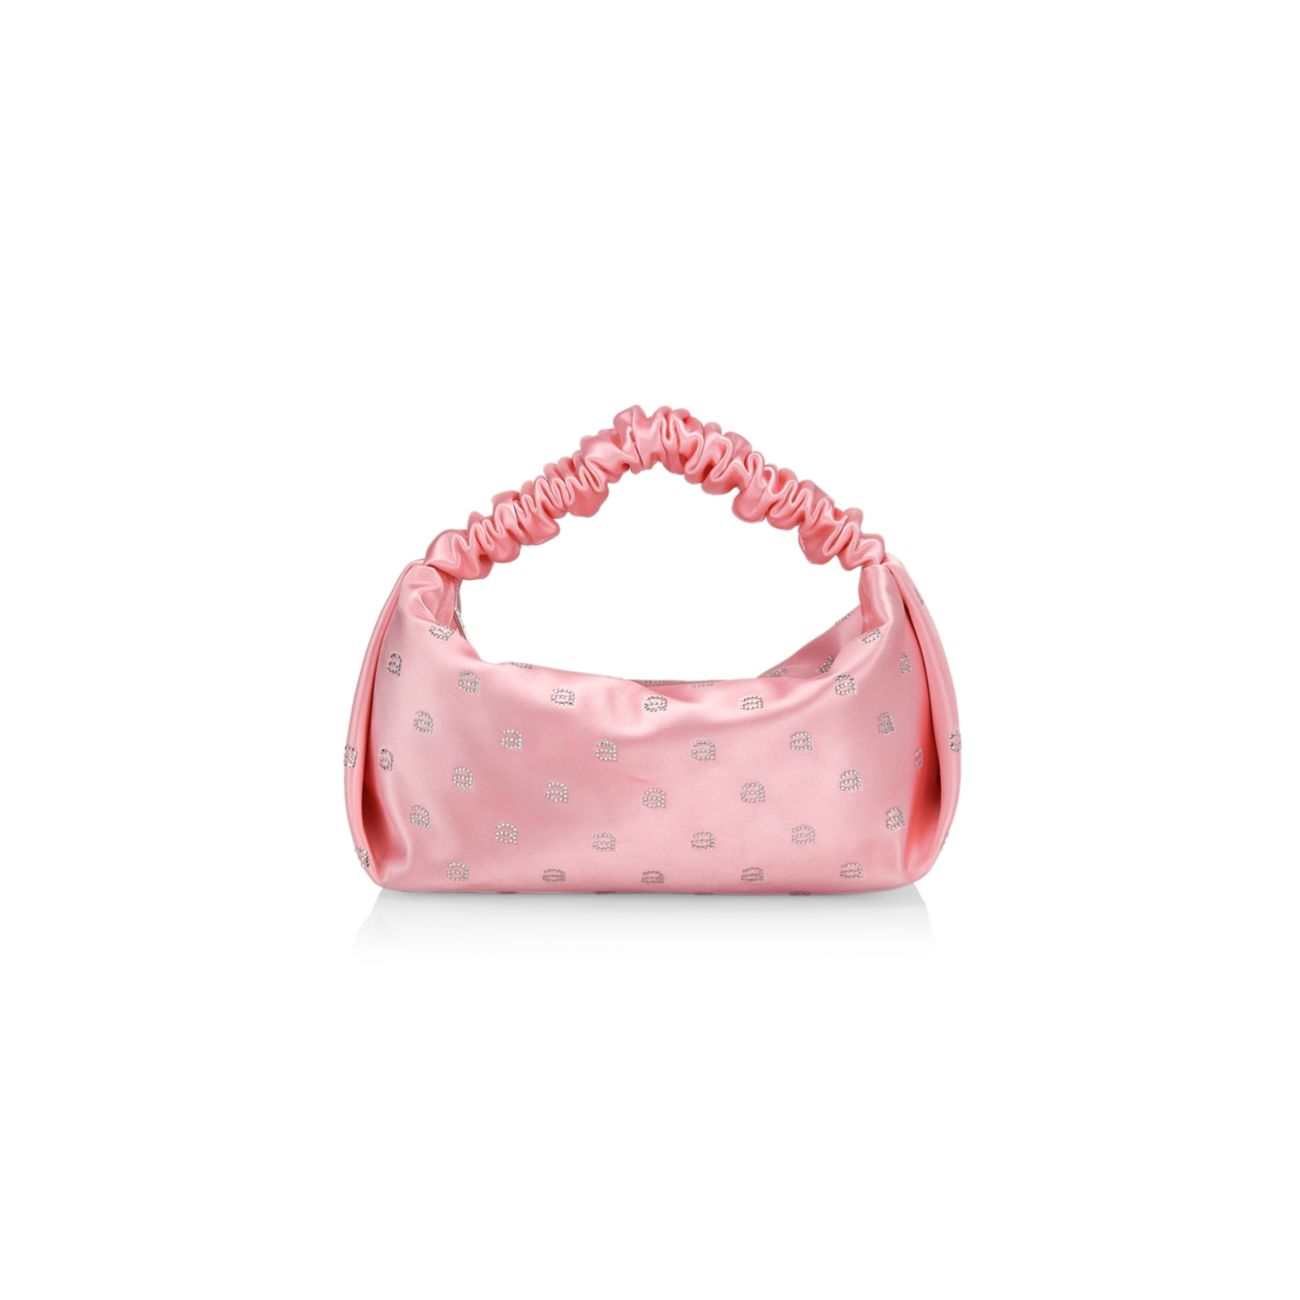 Атласная сумка Mini Scrunchie с монограммой и ручкой сверху, украшенная кристаллами Alexander Wang